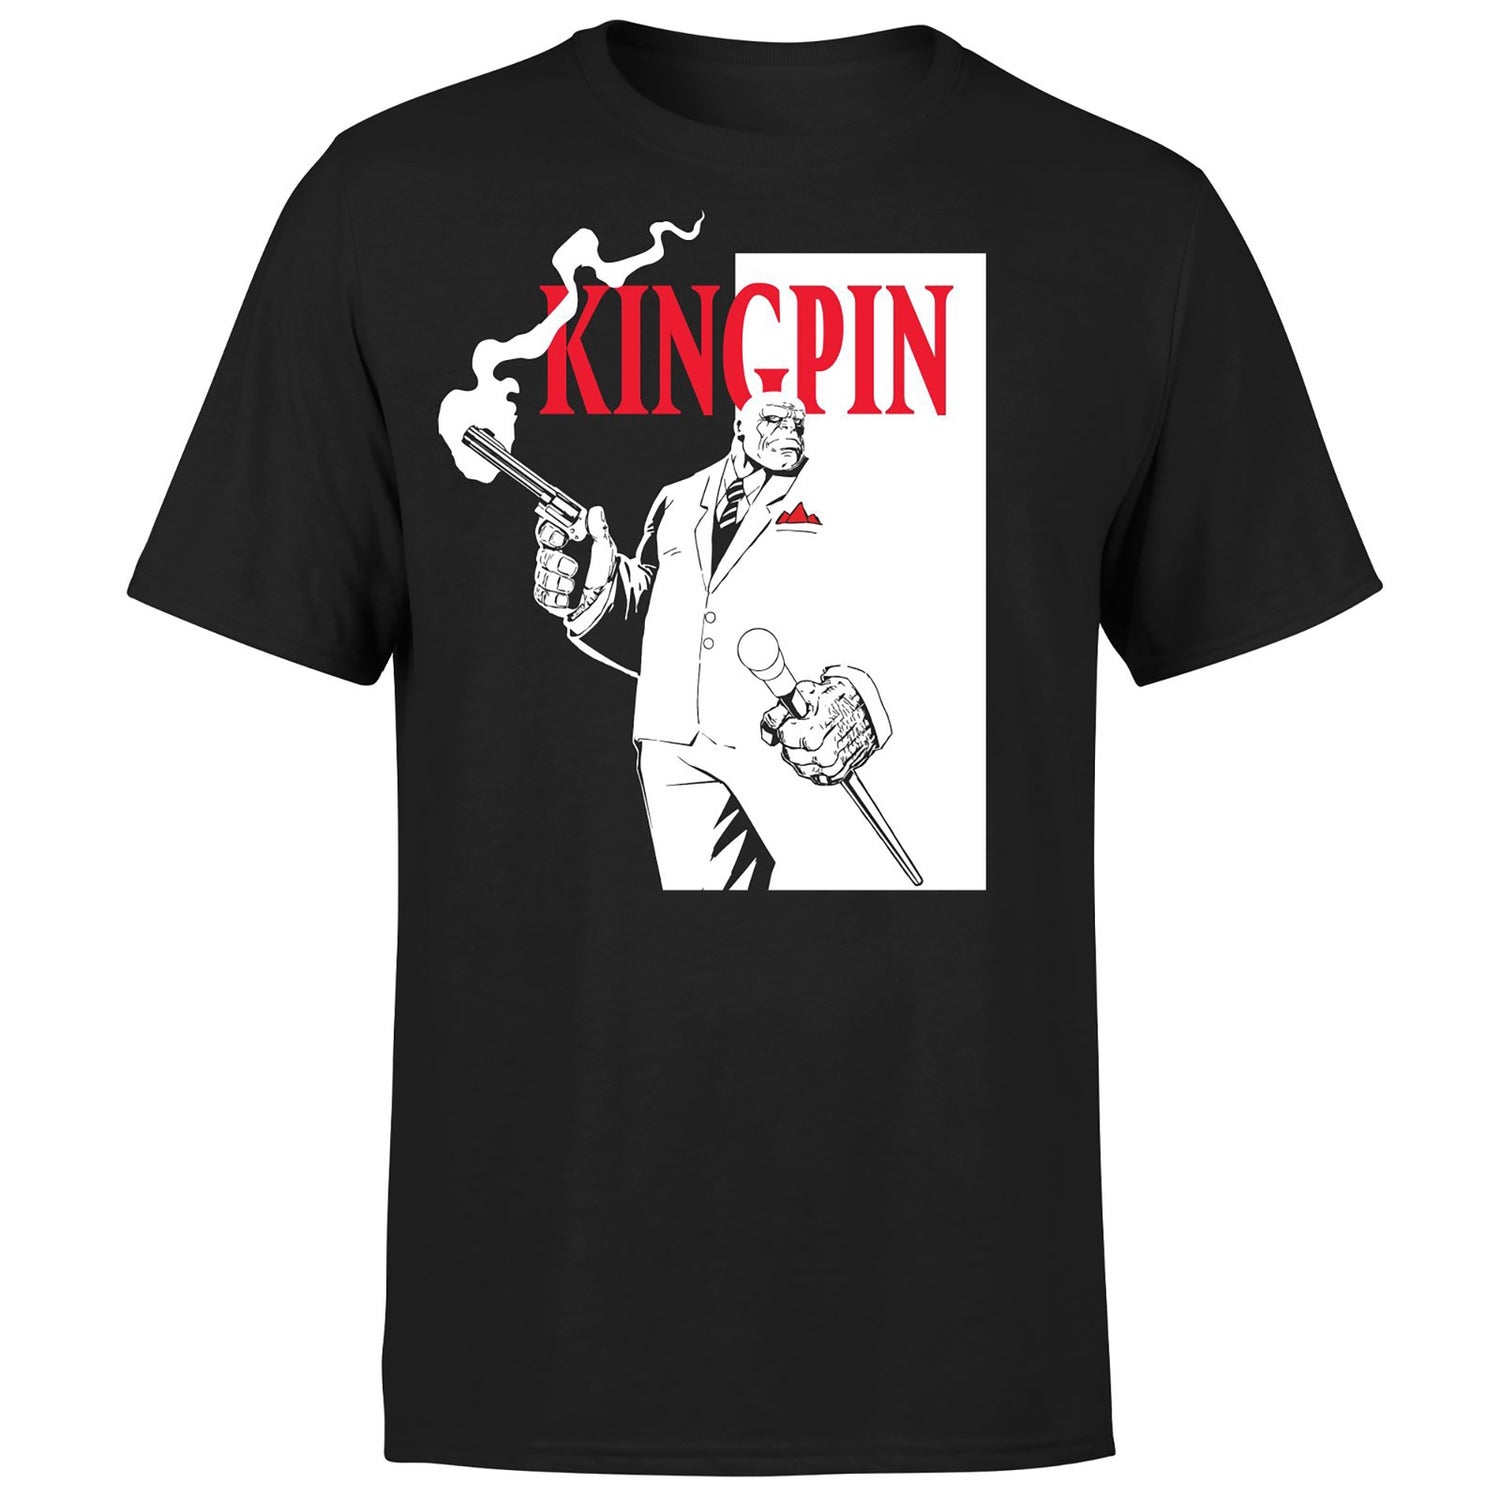 Kingpin Unisex T-Shirt - Black